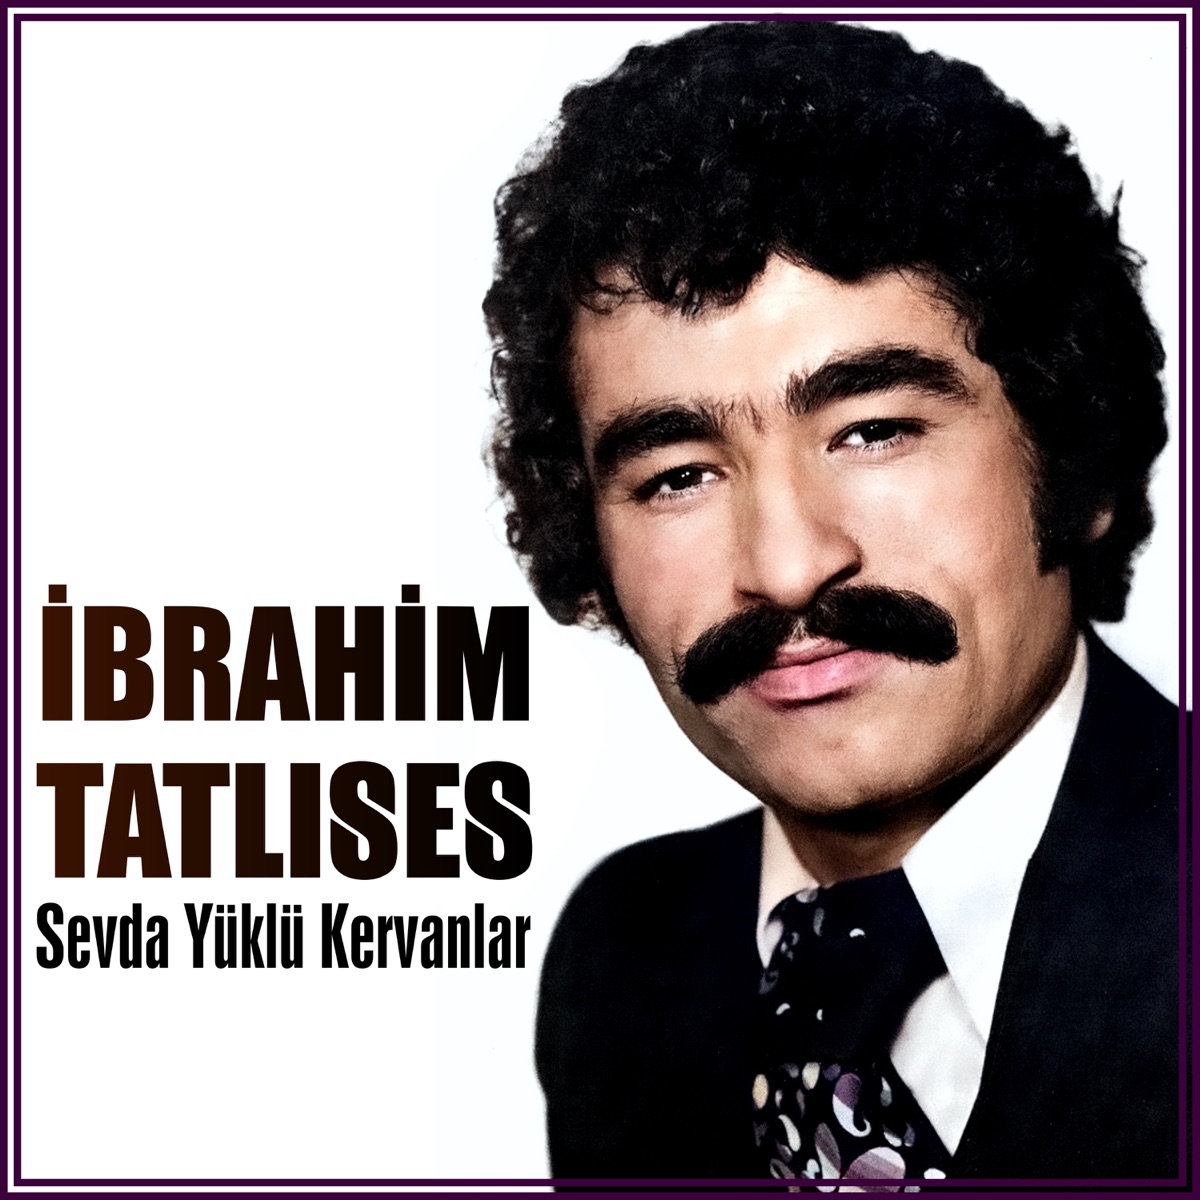 Sevda Yüklü Kervanlar - Album by İbrahim Tatlıses - Apple Music